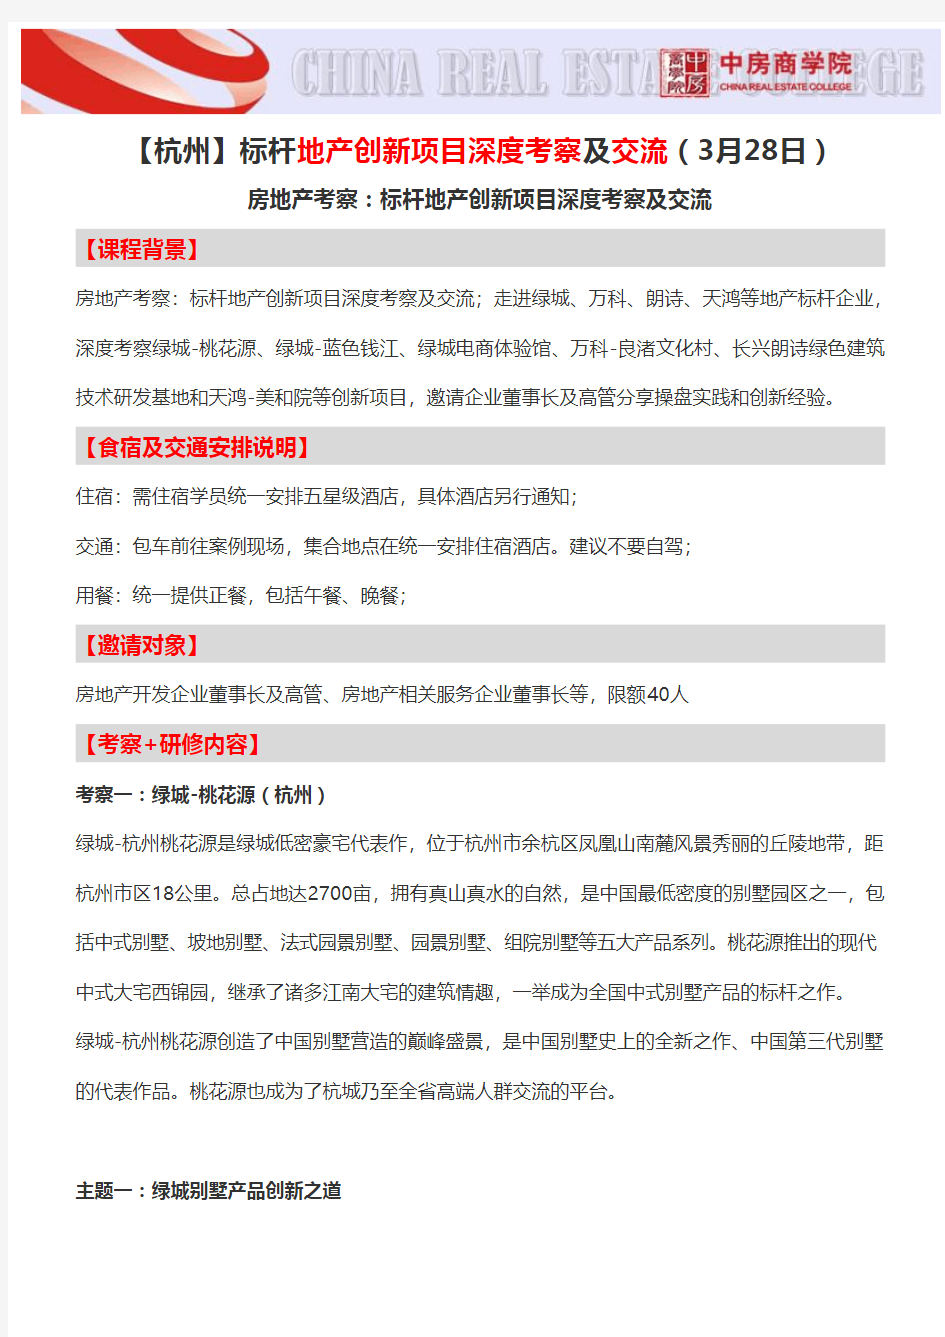 【杭州】标杆地产创新项目深度考察及交流(3月28日)-中房商学院